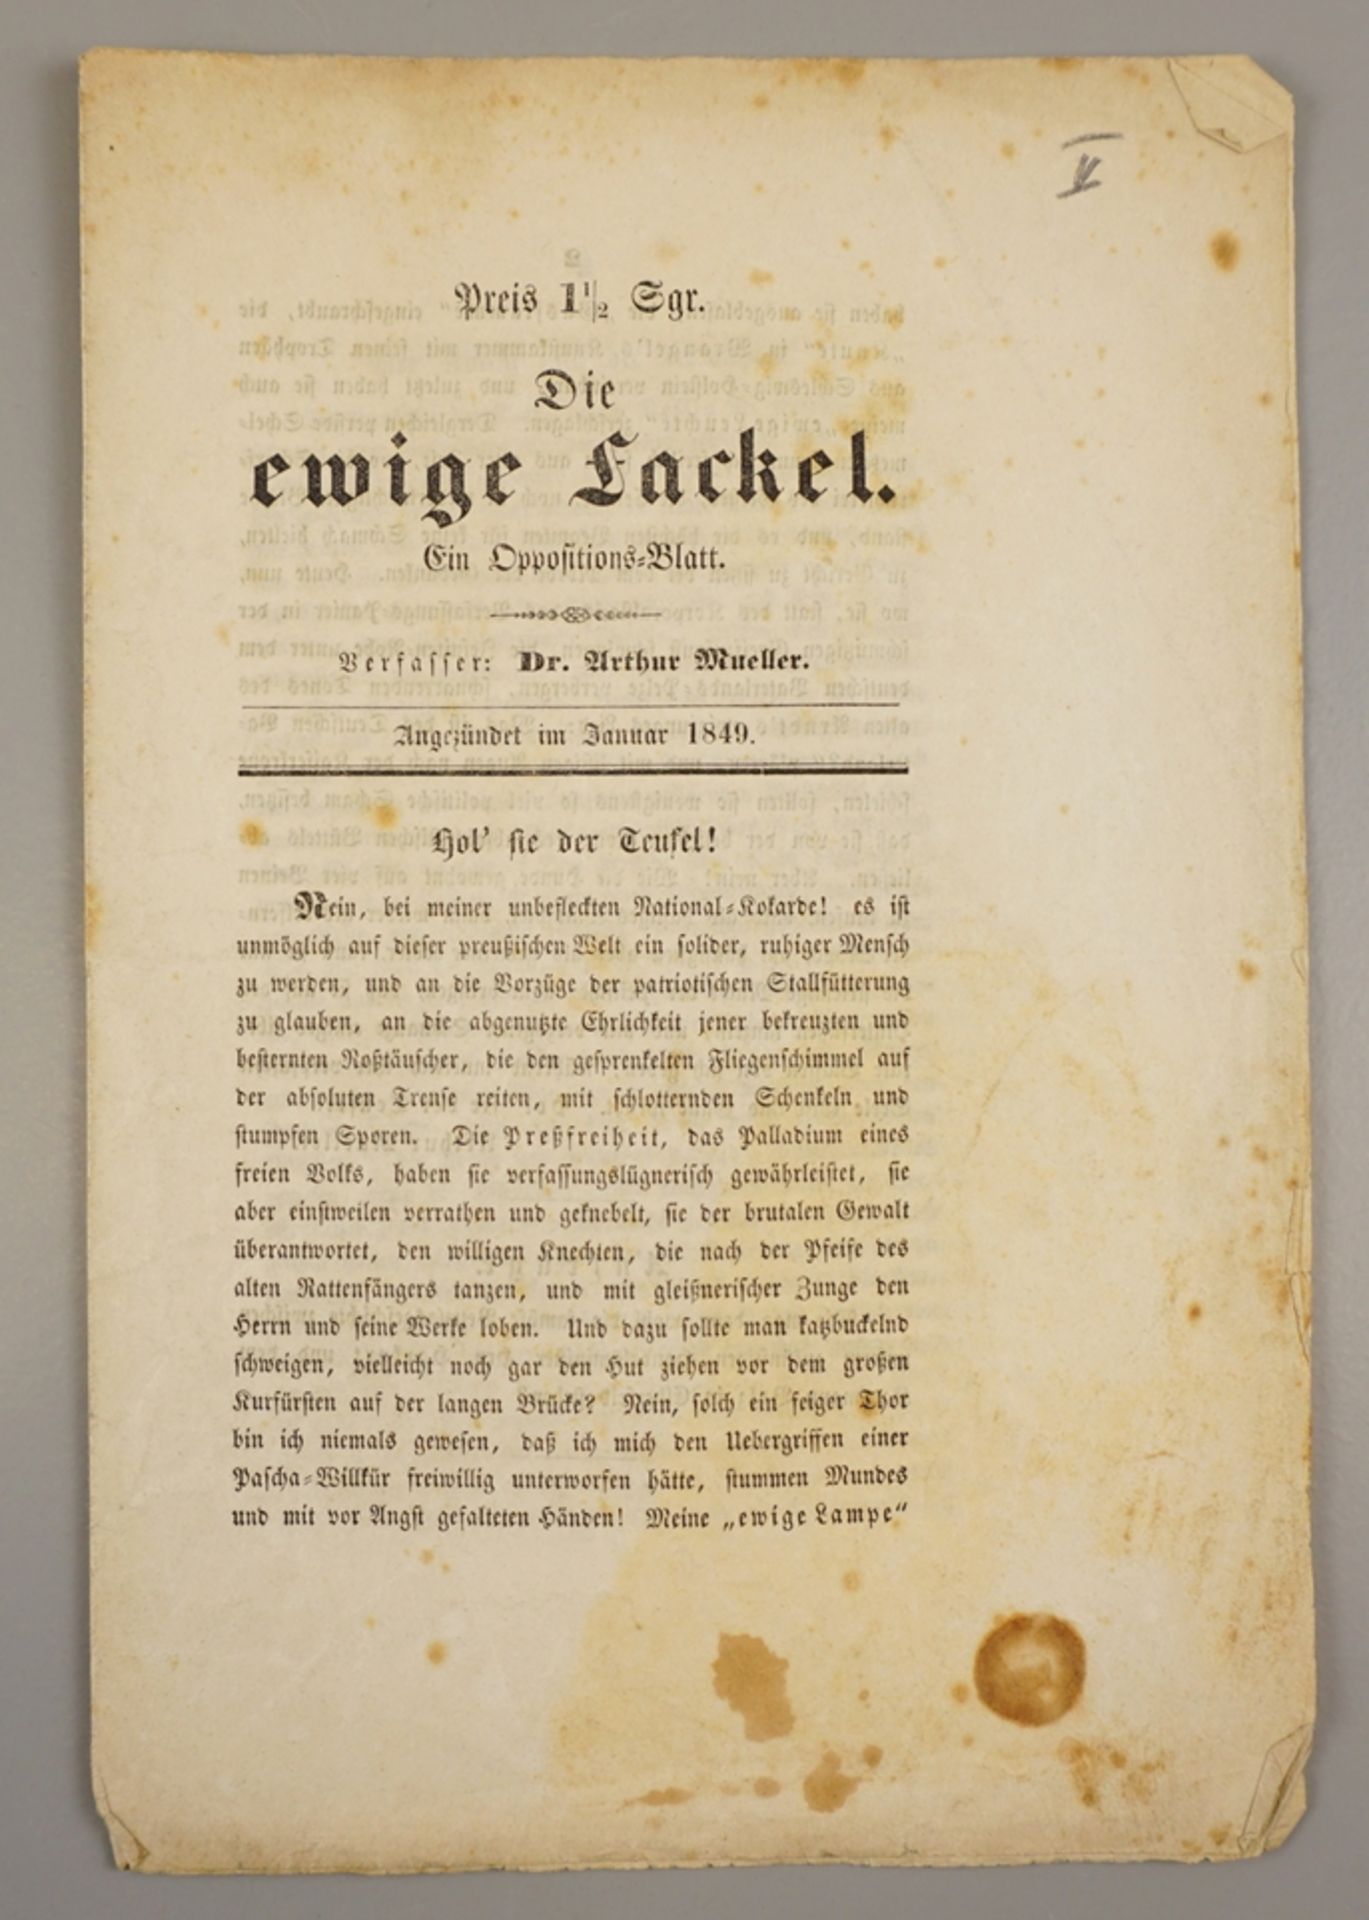 "Die ewige Fackel" - Ein Oppositions-Blatt, Verfasser Arthur Mueller, "angezündet im Januar 1849"